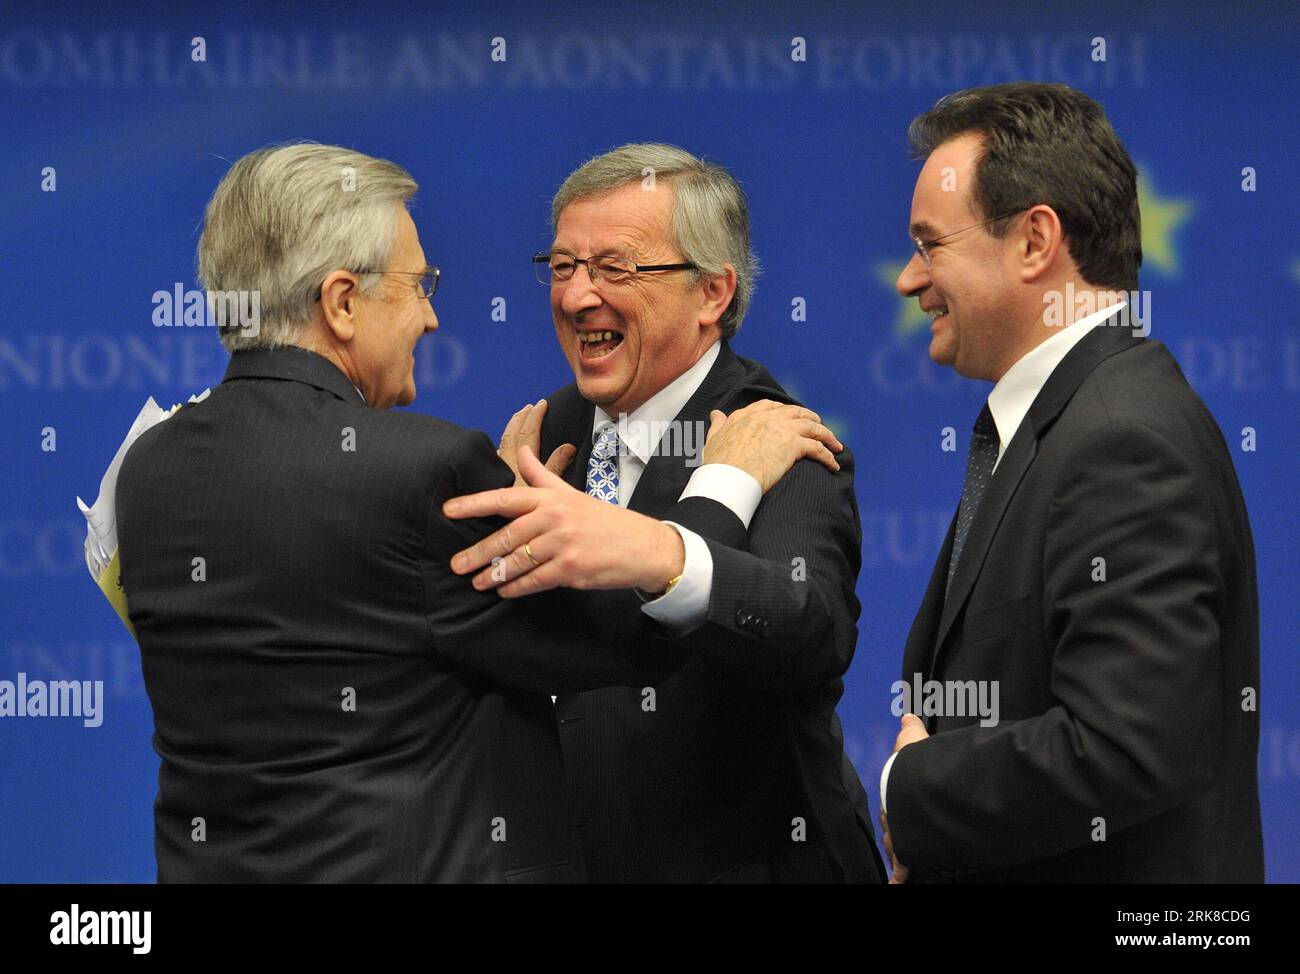 100502 -- BRUXELLES, 2 maggio 2010 Xinhua -- il presidente dell'Eurogruppo e il primo ministro del Lussemburgo Jean-Claude Juncker C abbraccia il presidente della Banca centrale europea Jean-Claude Trichet L in qualità di ministro greco delle finanze George Papaconstantinou guarda a una conferenza stampa dopo la riunione dei ministri delle finanze dell'Eurogruppo a Bruxelles, capitale del Belgio, il 2 maggio 2010. Domenica i ministri delle finanze della zona euro hanno concordato di attivare il pacchetto di aiuti per la Grecia, offrendo, insieme al Fondo monetario internazionale, 110 miliardi di euro al paese carico di debito nei prossimi tre anni. Xinhua/Wu Wei zw 1BELGIUM-BRUSSELS-GRE Foto Stock